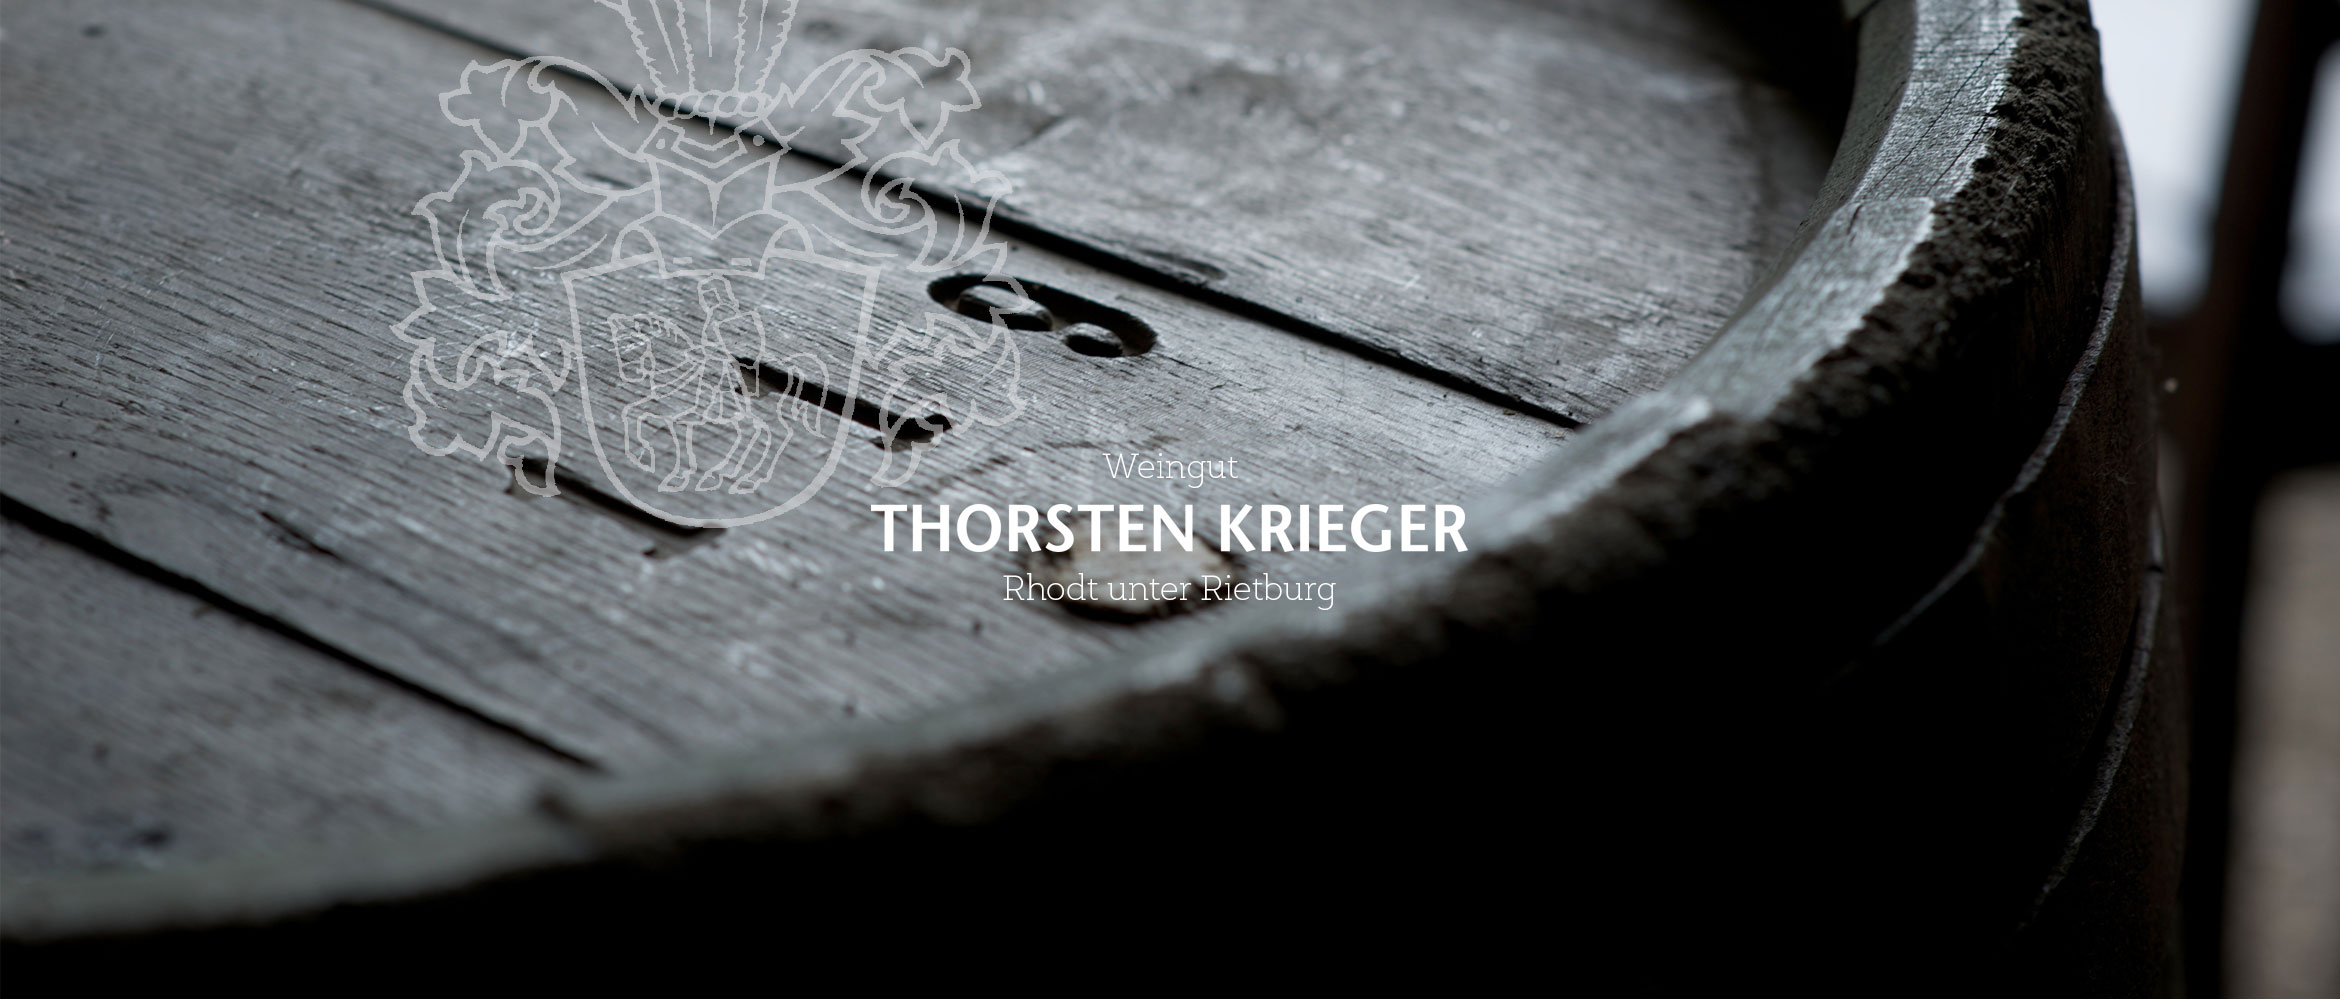 Weingut Thorsten Krieger Theresienstrasse 71 76835Rhodt unter Rietburg